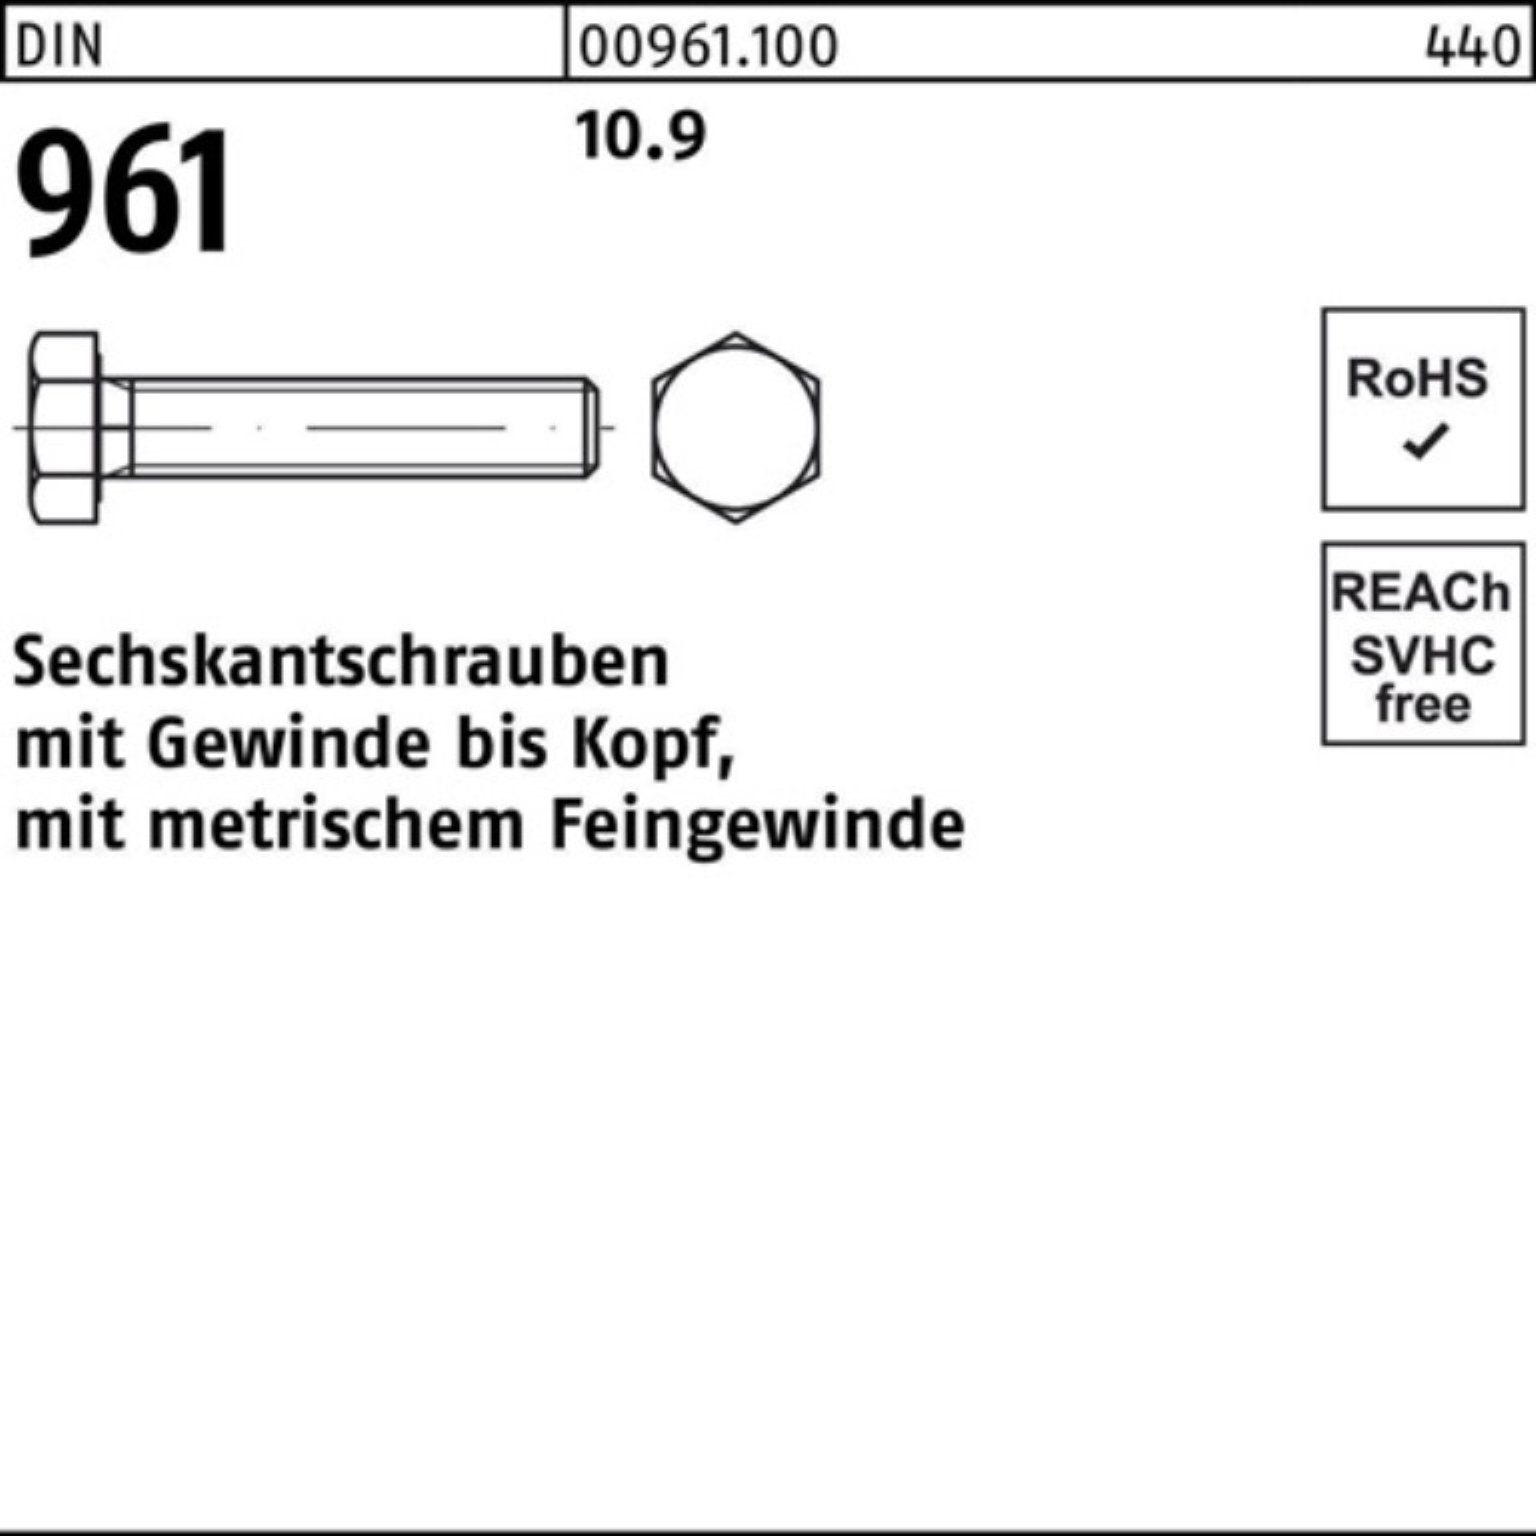 Reyher Sechskantschraube 100er Sechskantschraube DIN Pack DIN 961 VG 30 Stück 10.9 50 M18x1,5x